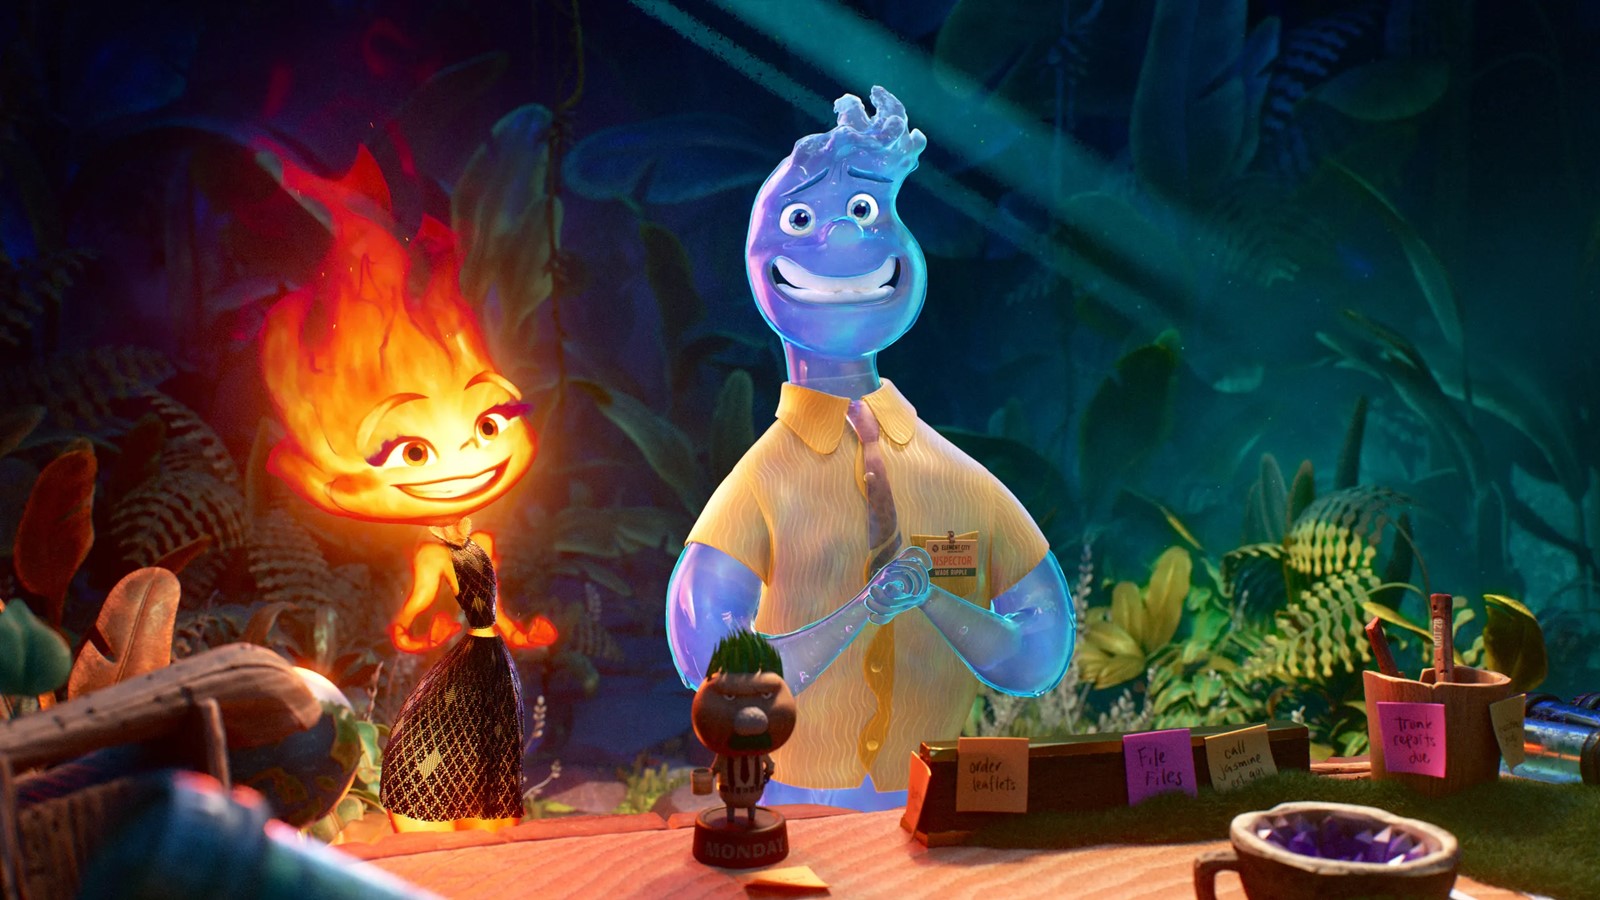 Elemental: la descrizione dei 20 minuti del film Pixar presentati in anteprima al CinemaCon